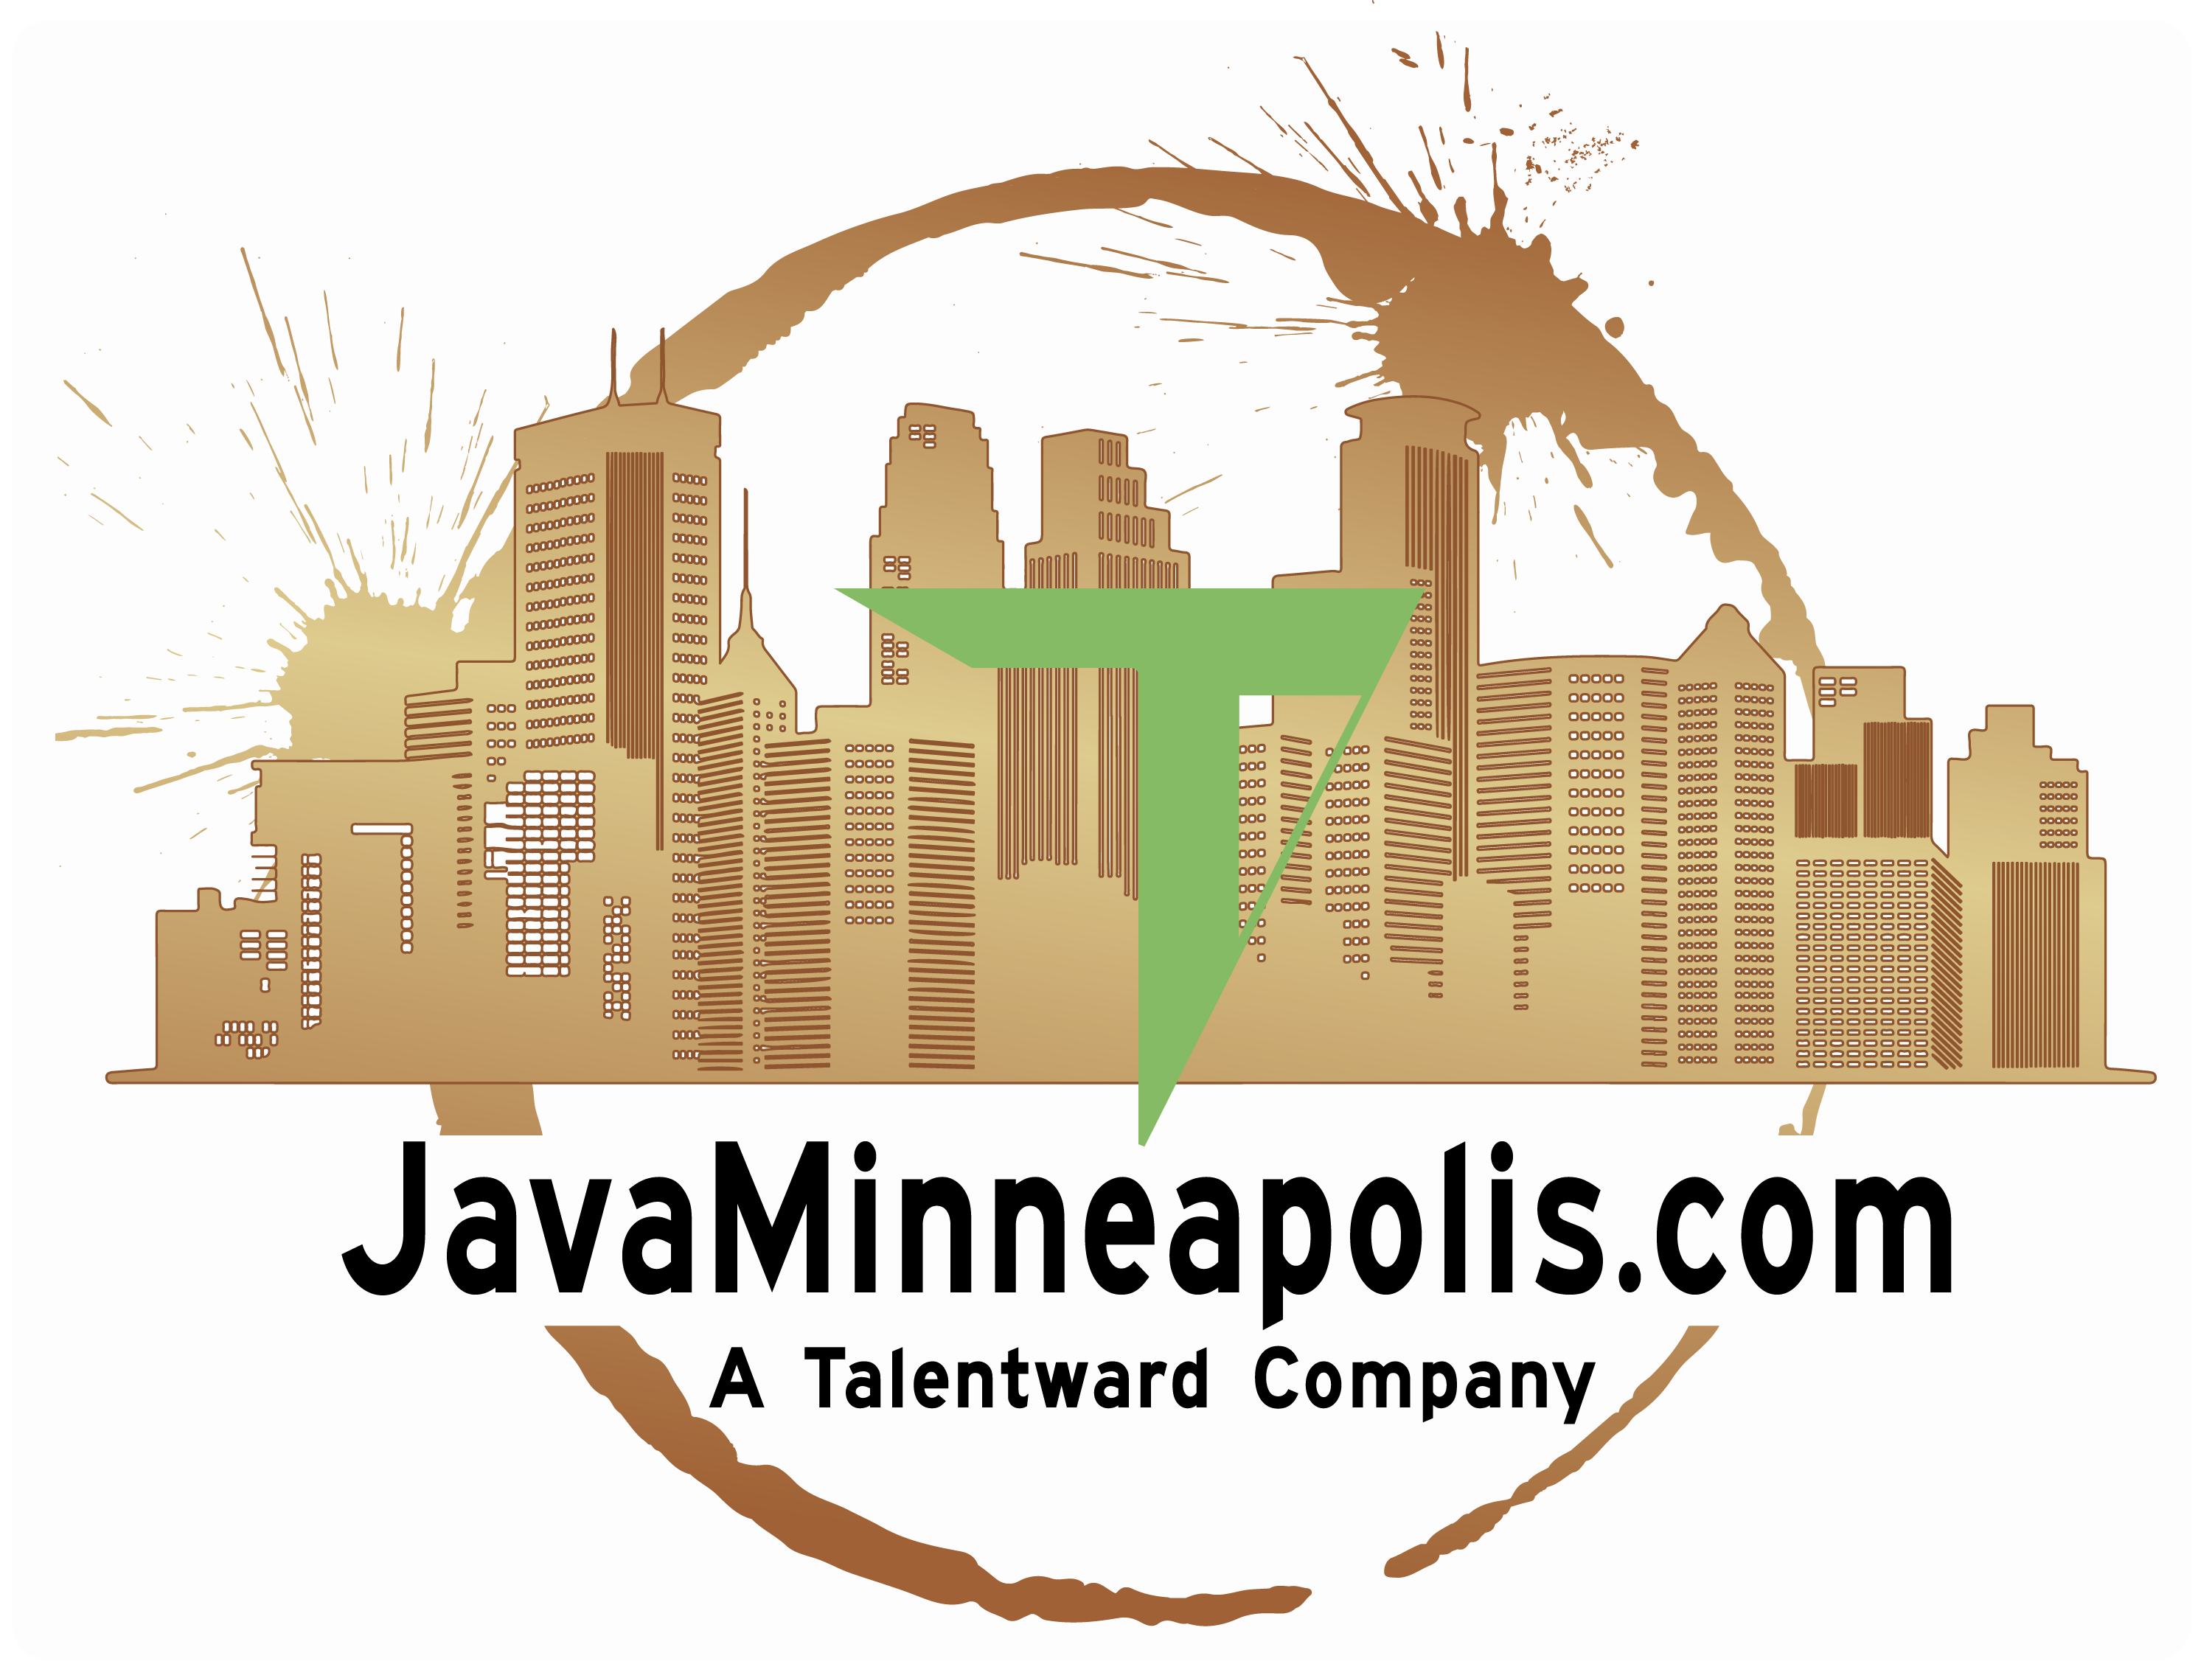 Java Minneapolis